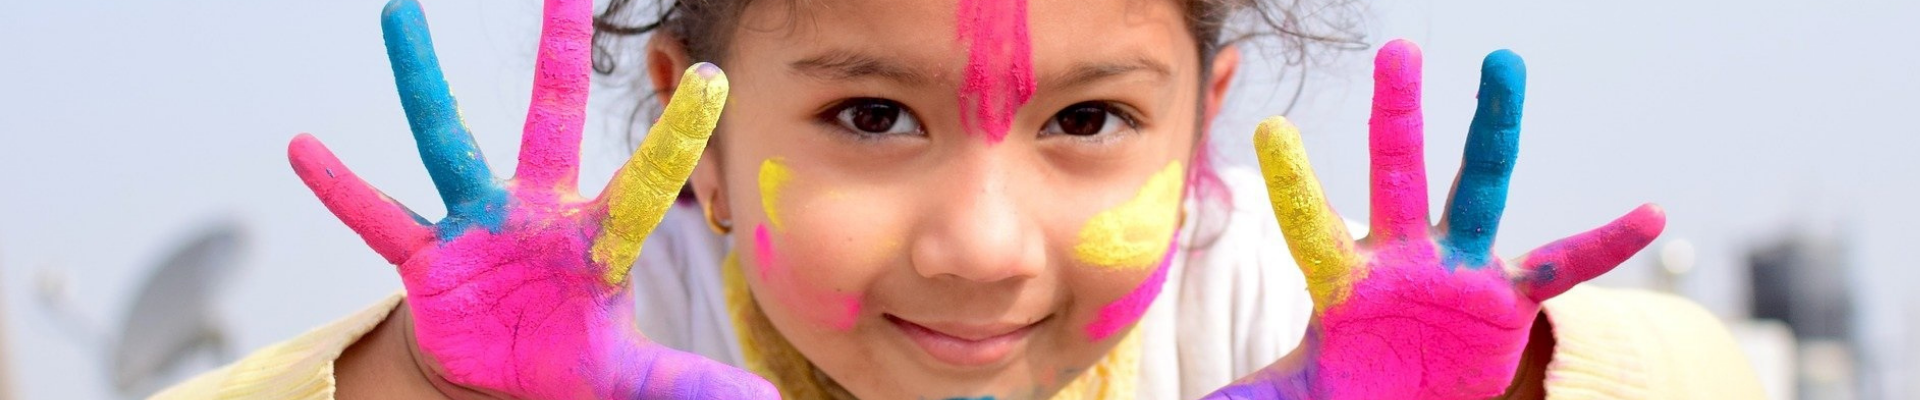 Ein Kind hält seine Hände in die Kamera, die mit gelber, blauer und rosaner Farbe bemalt sind. Auch im Gesicht hat das Kind bunte Farbe.